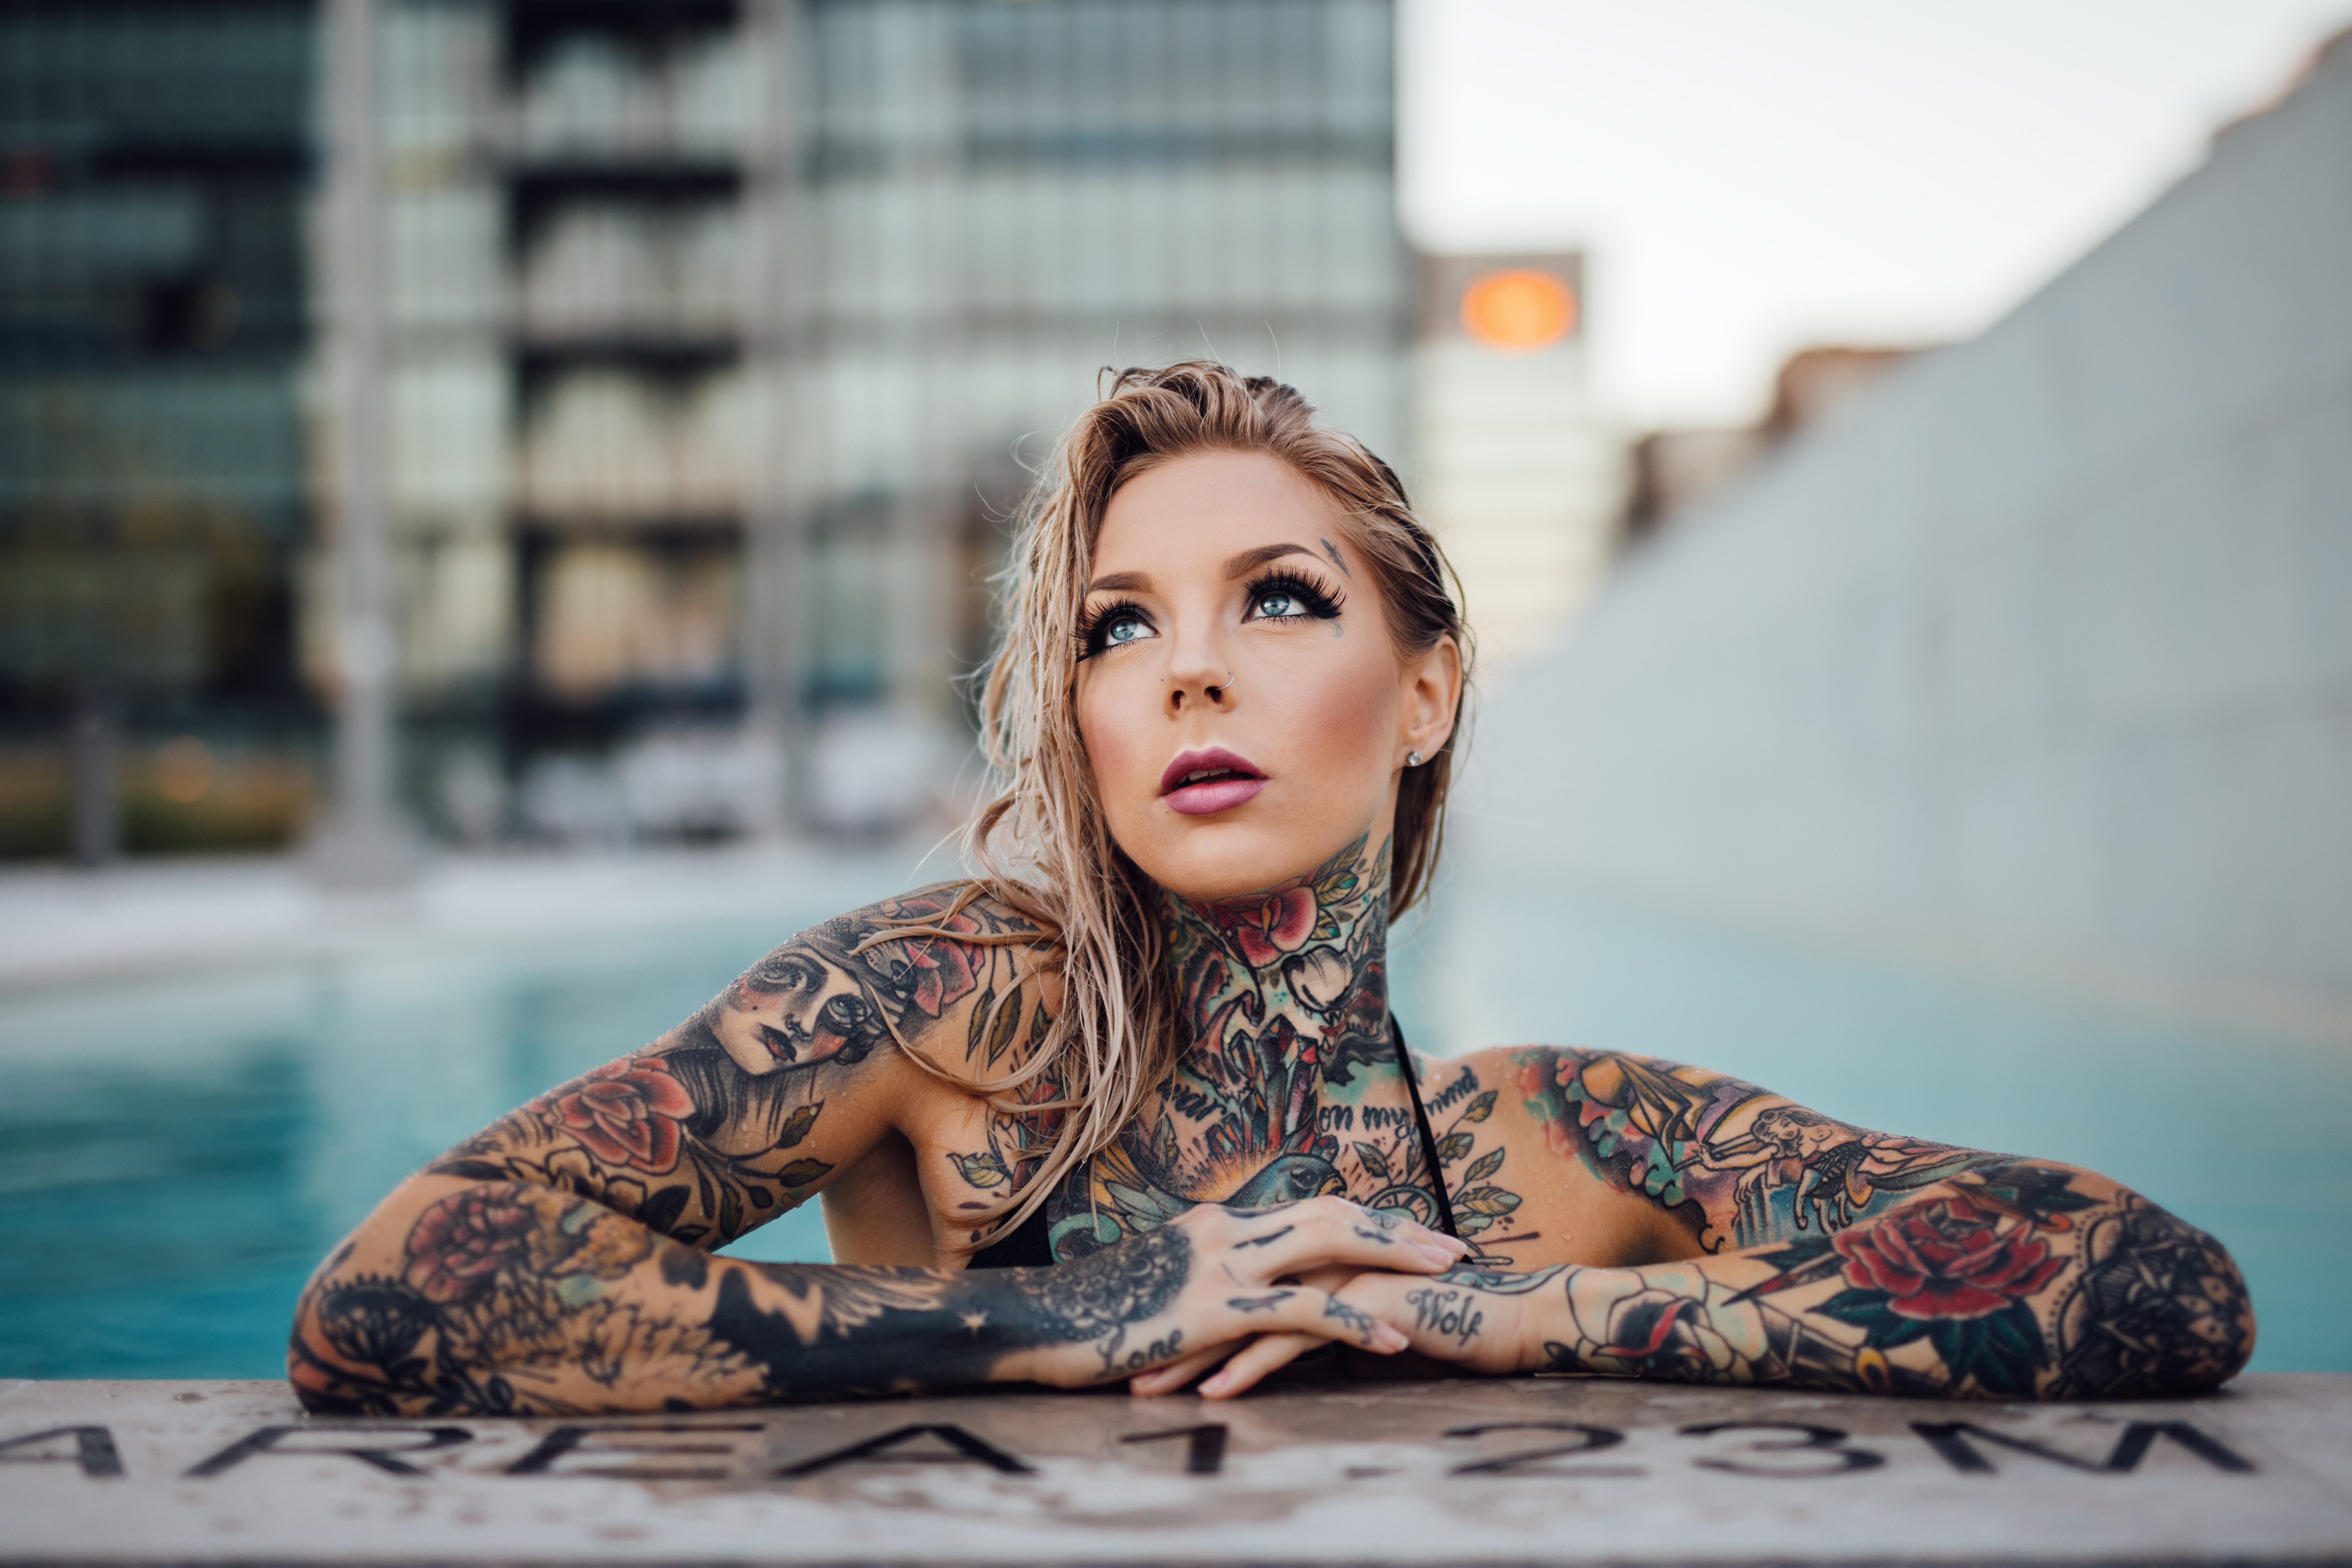 Татуировки на девушках. Украшение тела или осквернение?